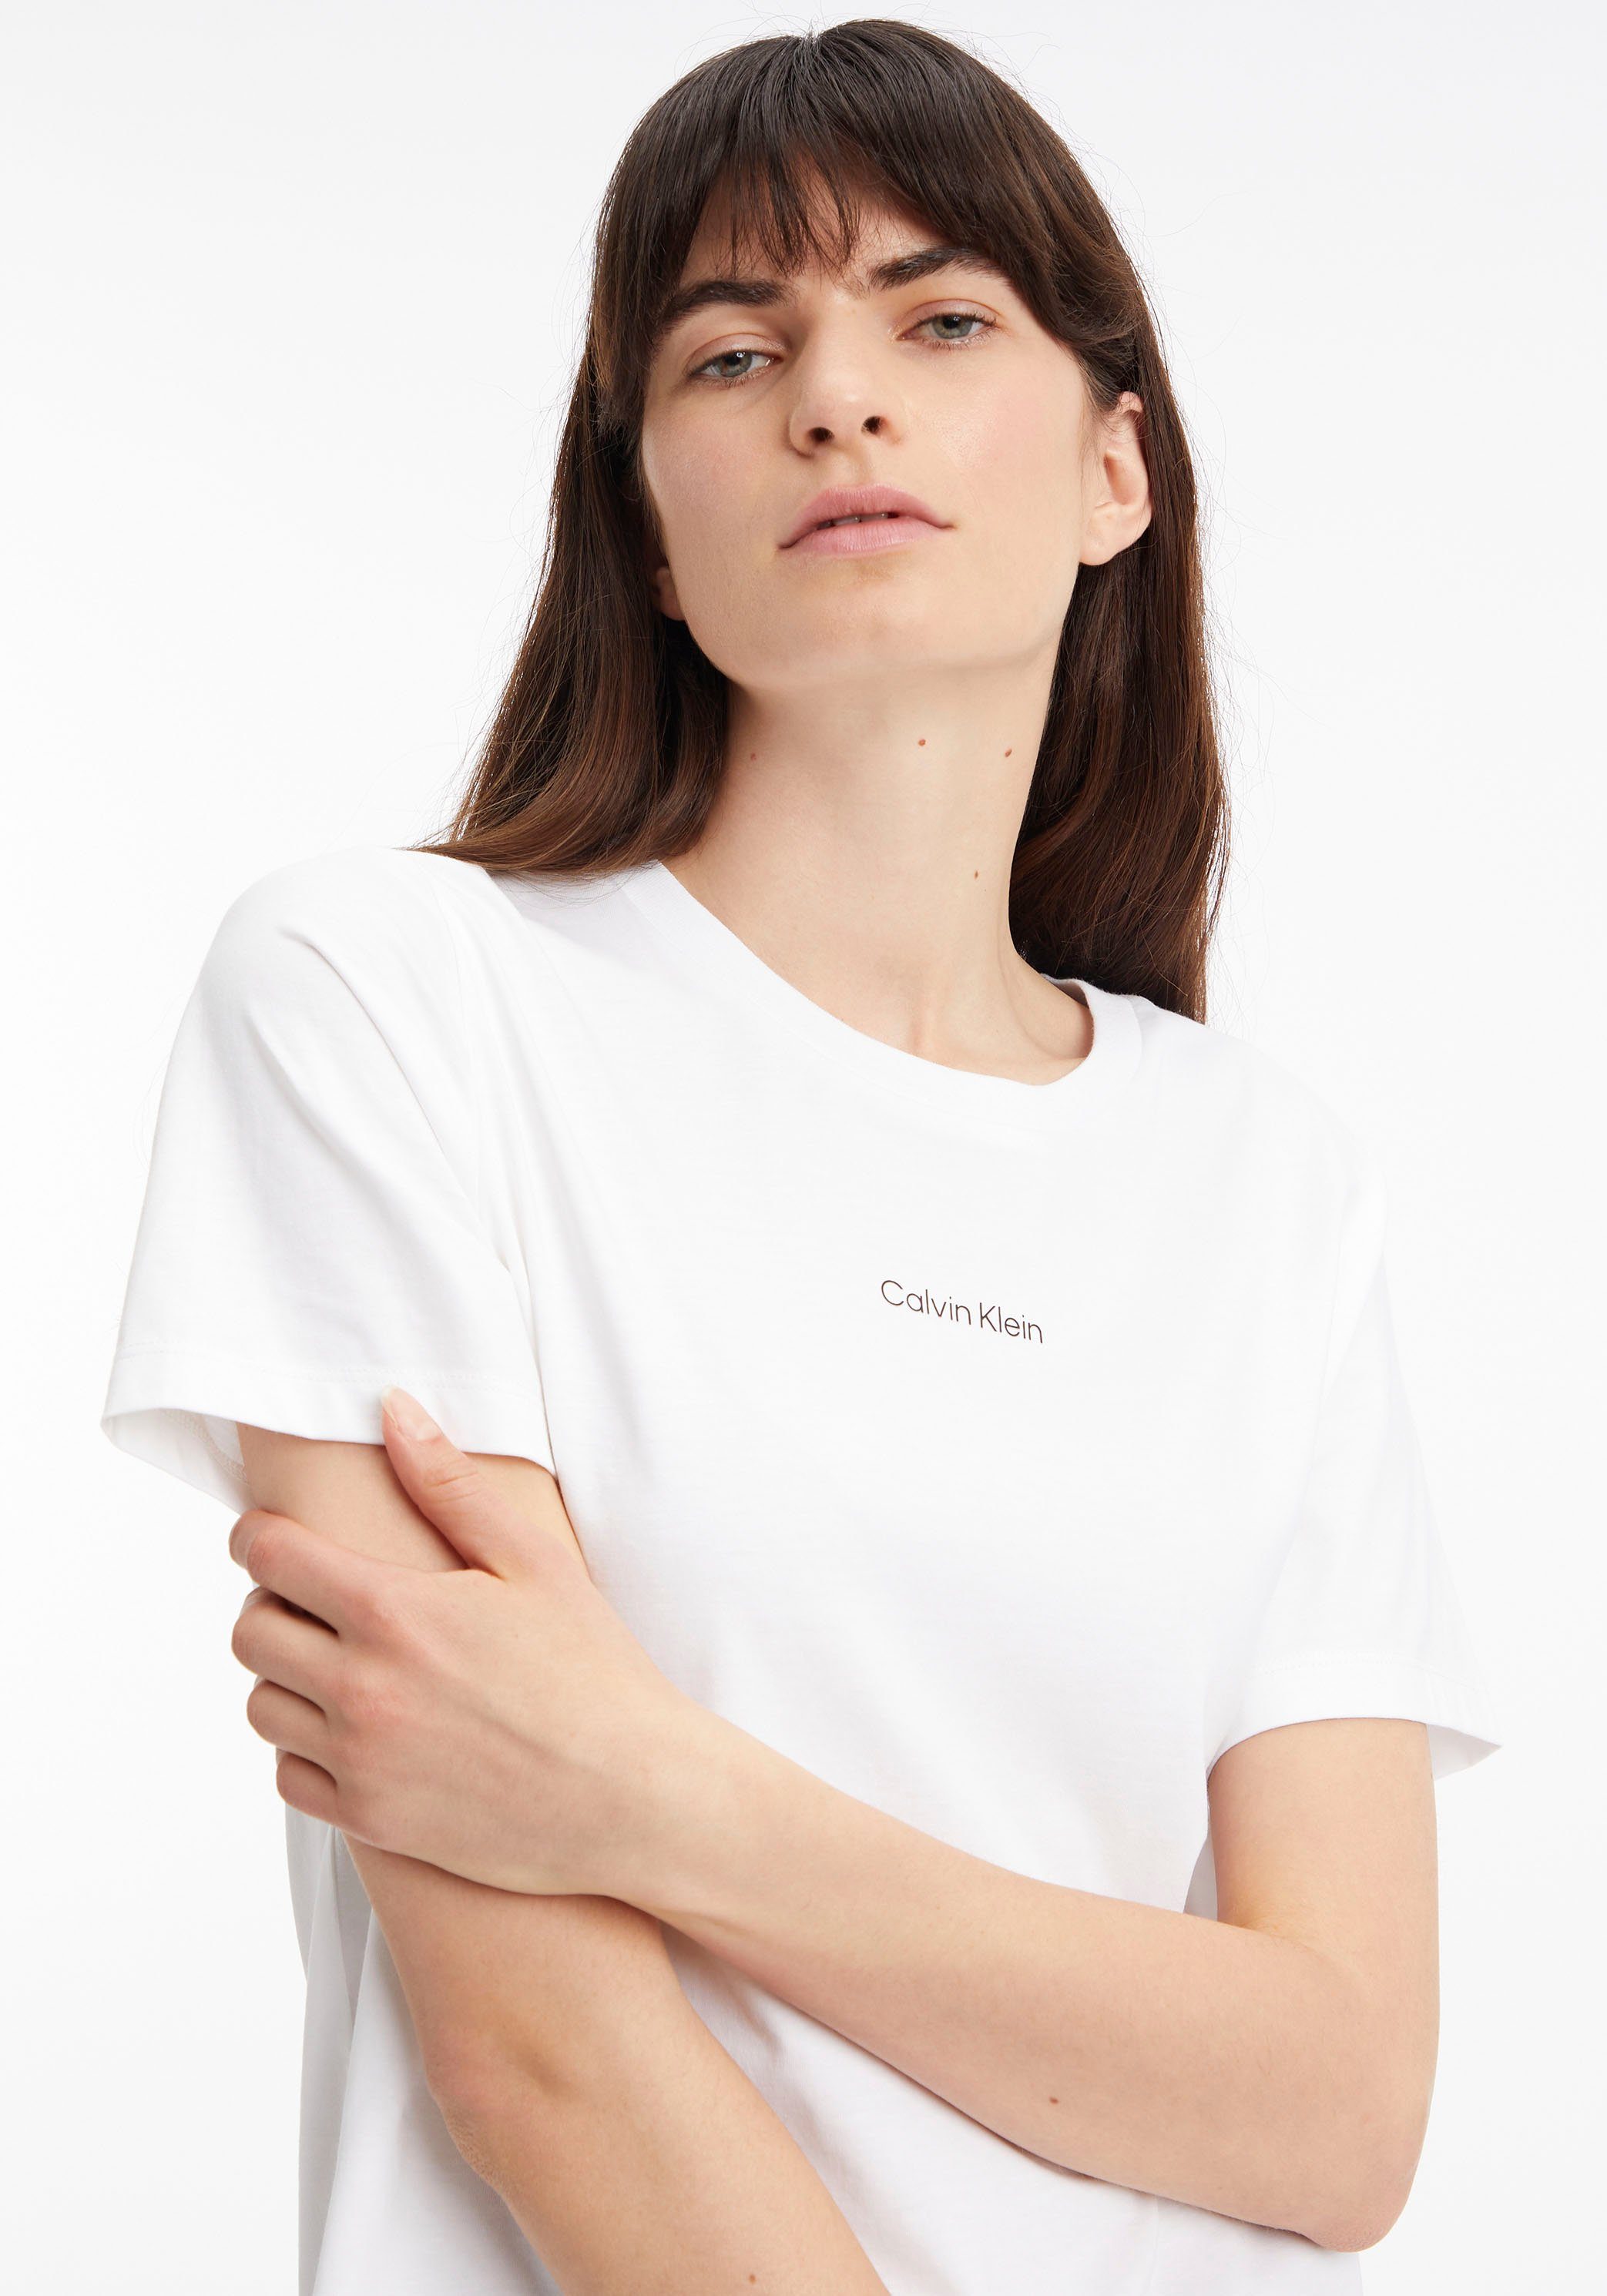 Bright-White MICRO LOGO T-Shirt Baumwolle Klein reiner Calvin aus T-SHIRT